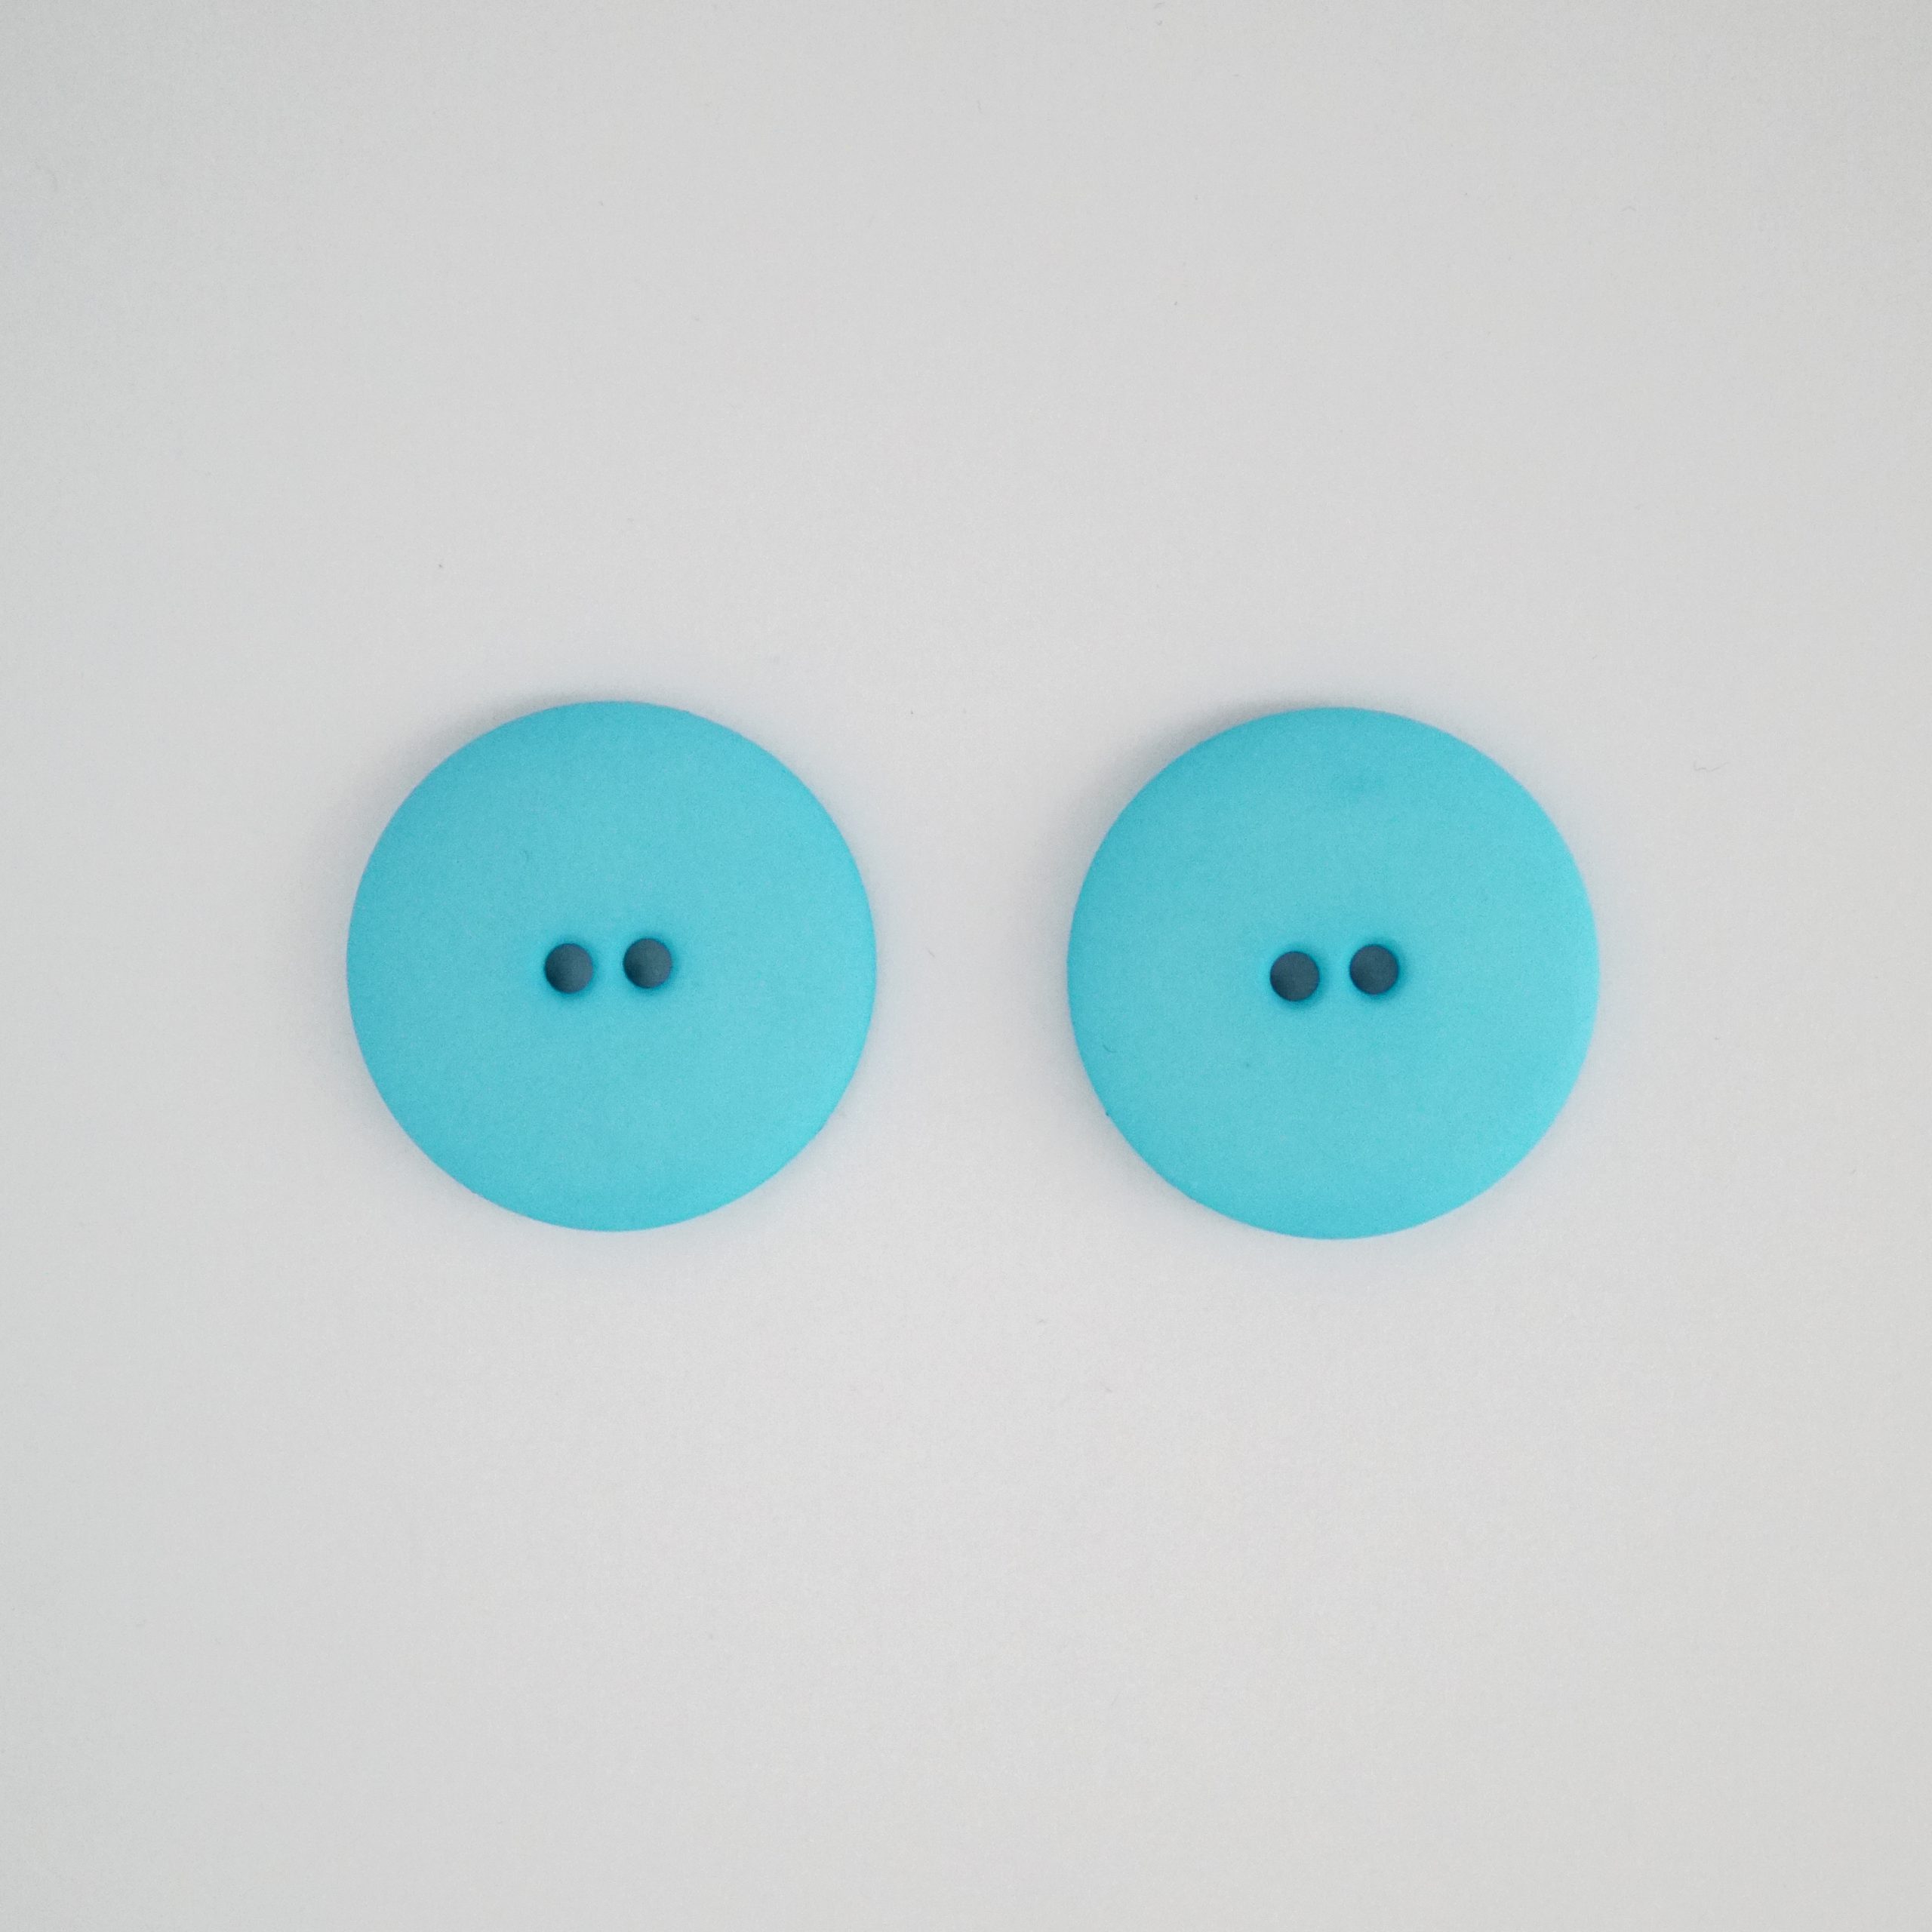 mint blue plastic buttons